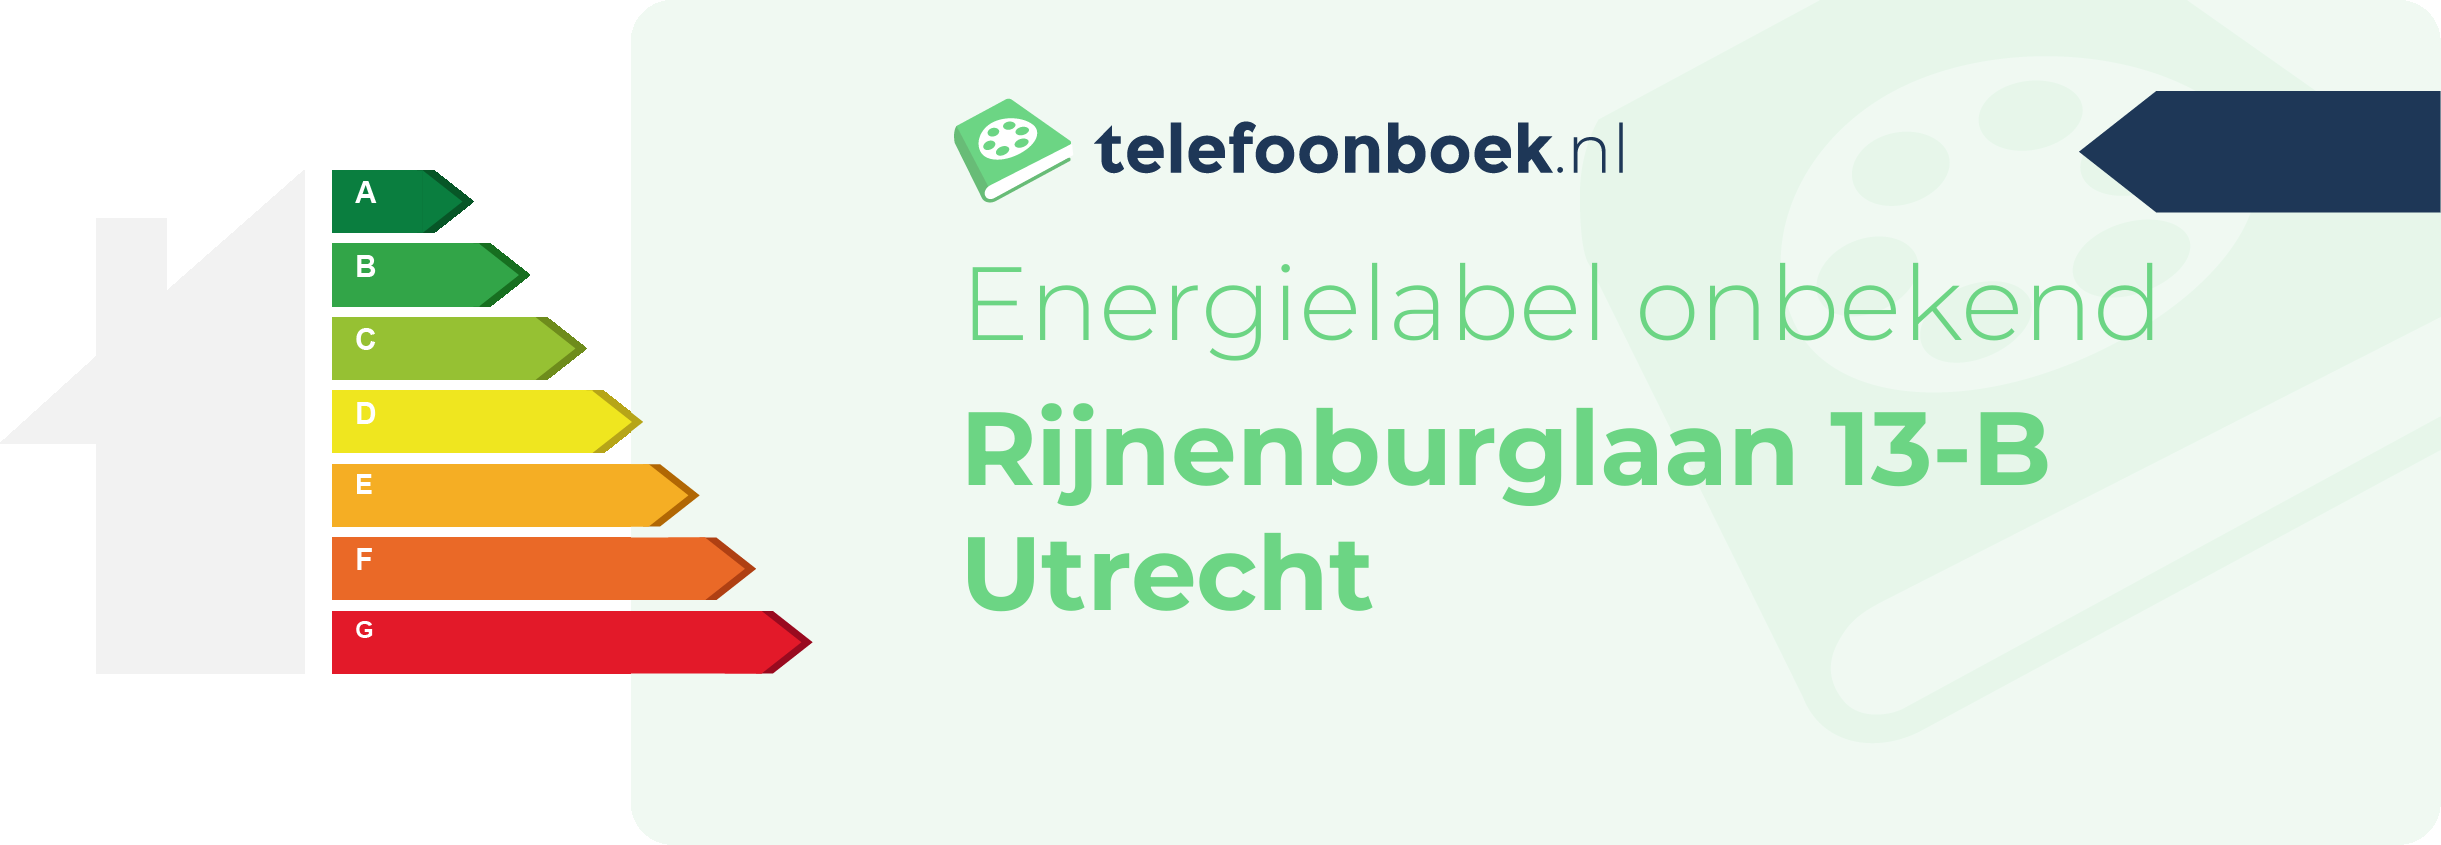 Energielabel Rijnenburglaan 13-B Utrecht